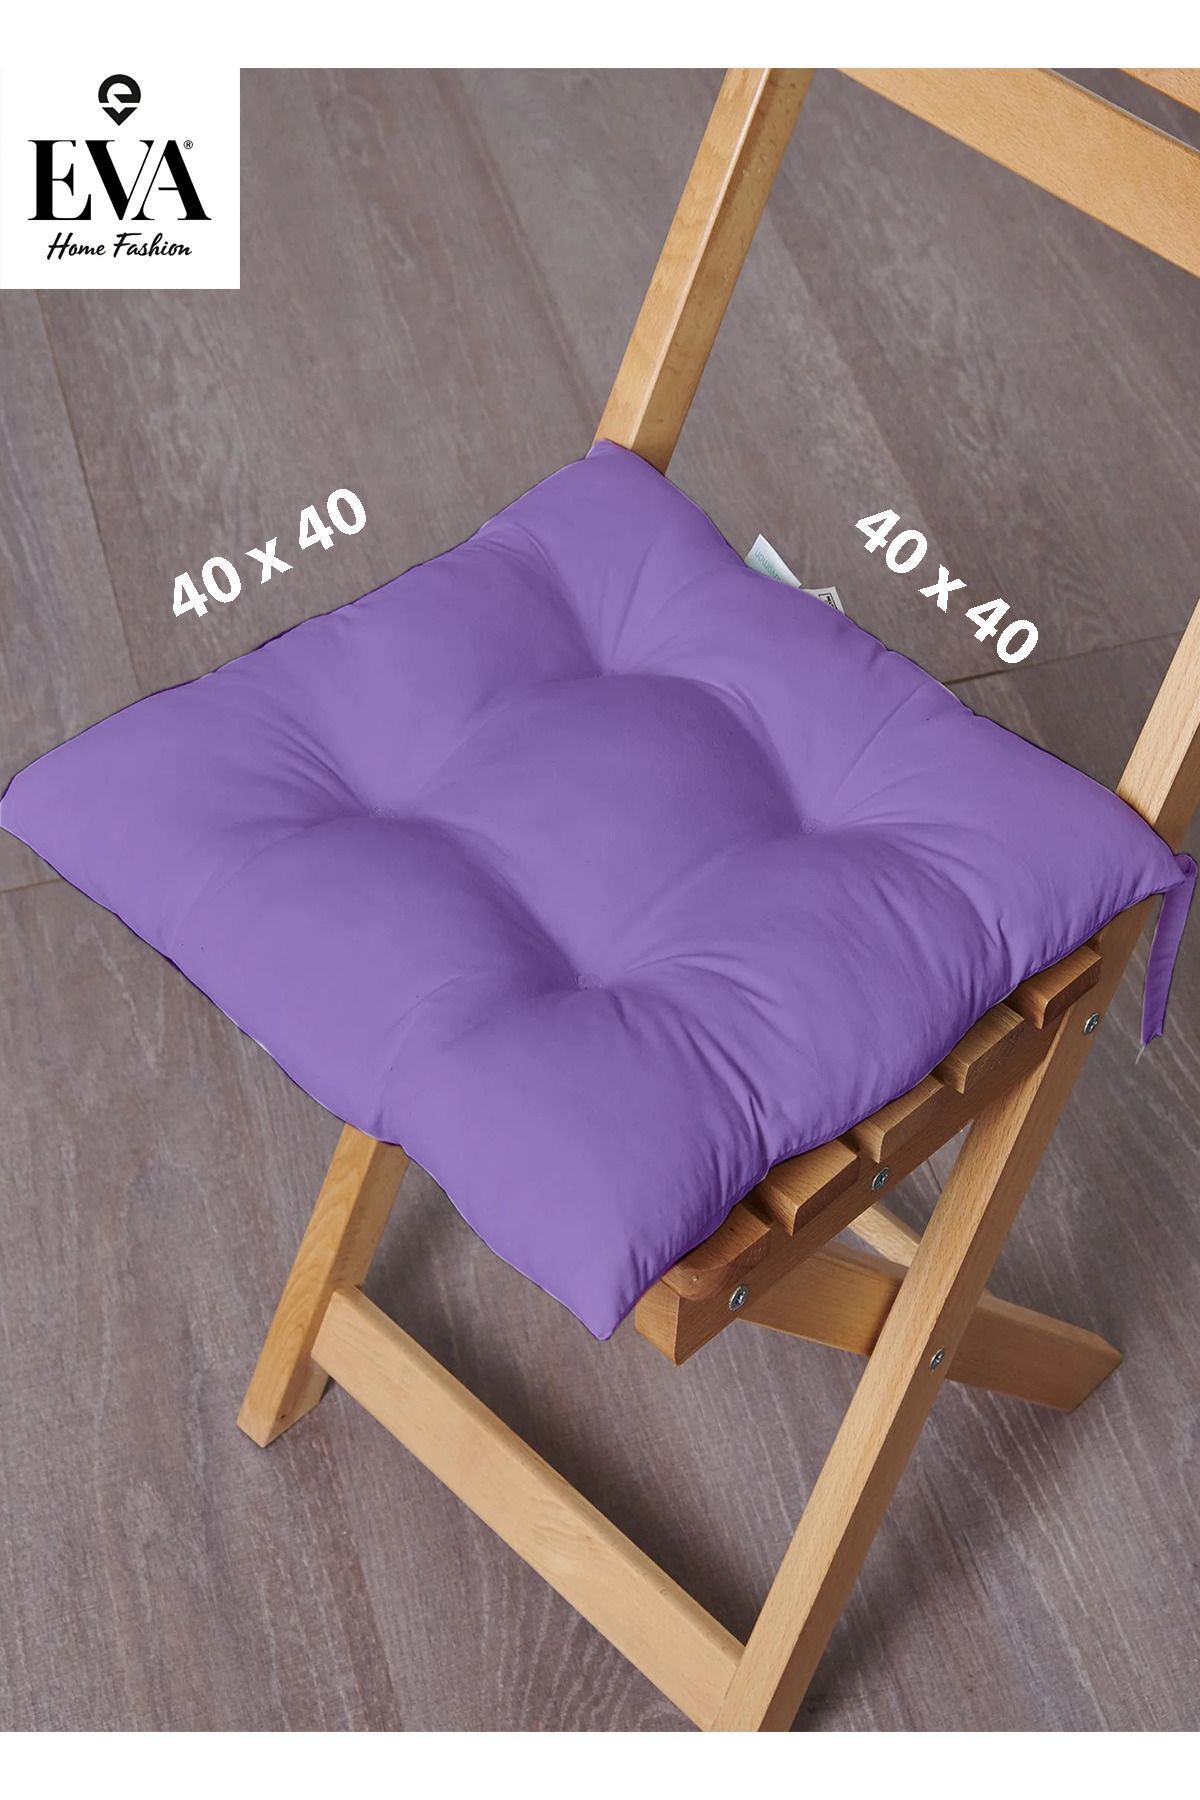 EVA Mor Renkli Özel Dikim Bağcıklı Pofuduk Sandalye, Koltuk, Tabure Minderi 40x40 Cm